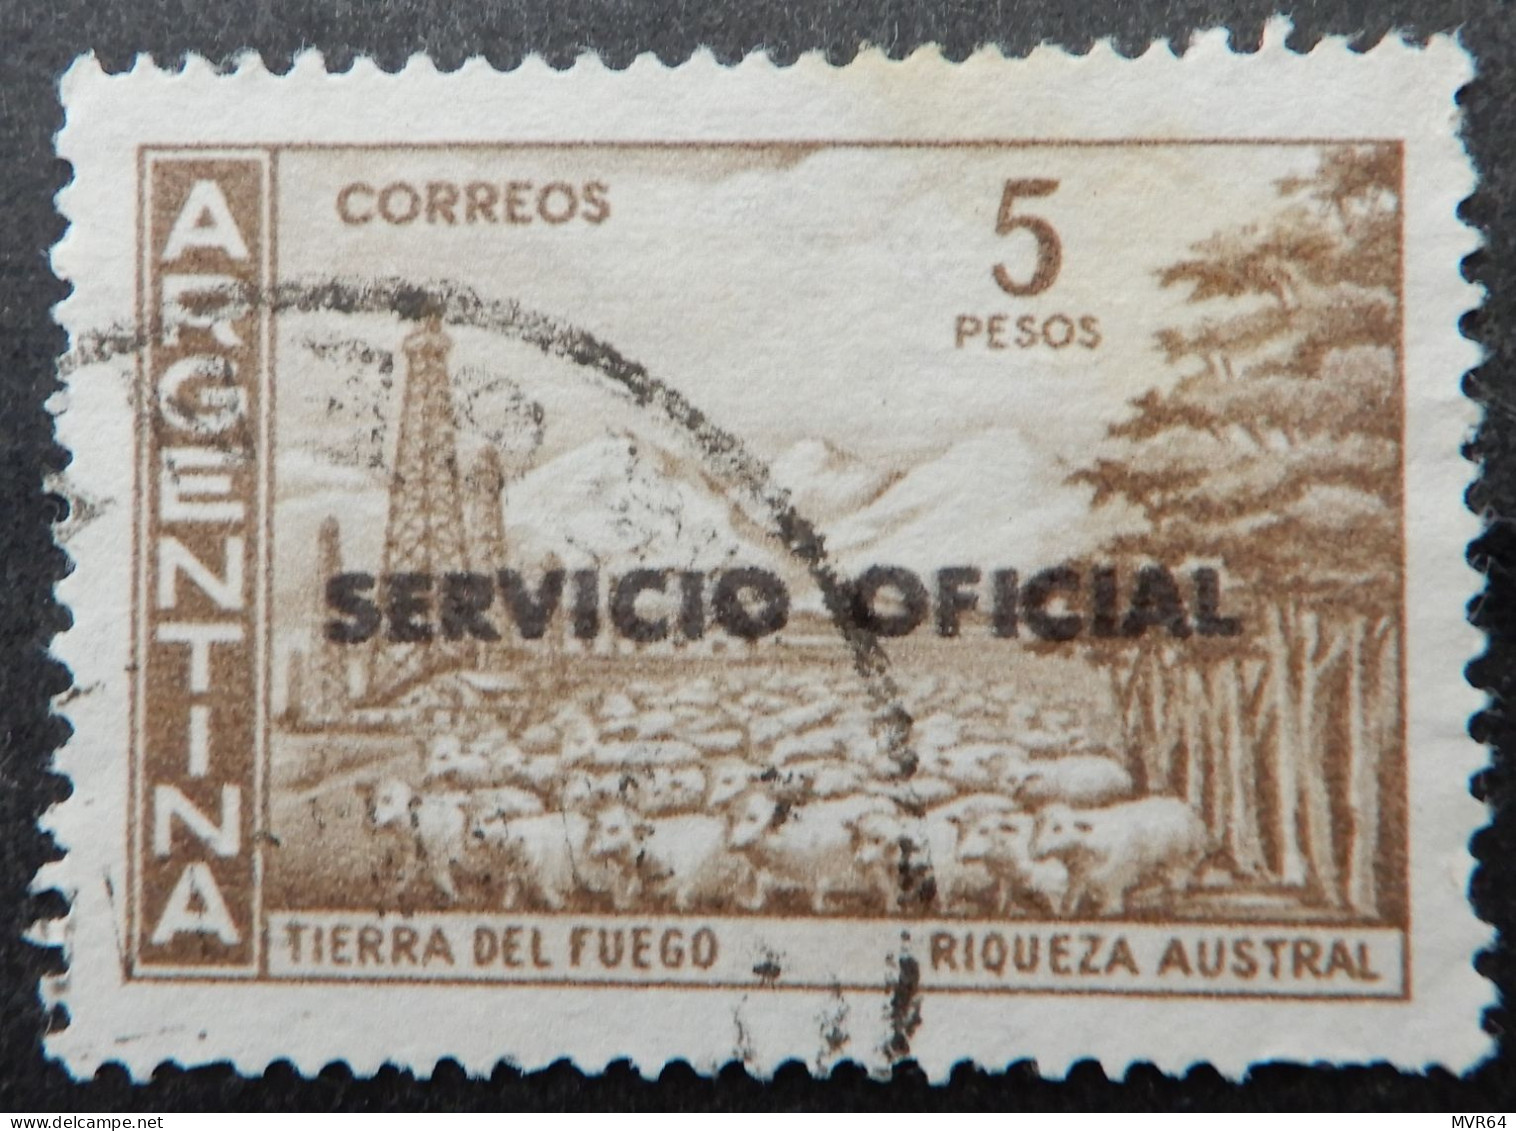 Argentinië Argentinia A 1959 (1) Tierra Del Fuego Riqueza Austral - Usados